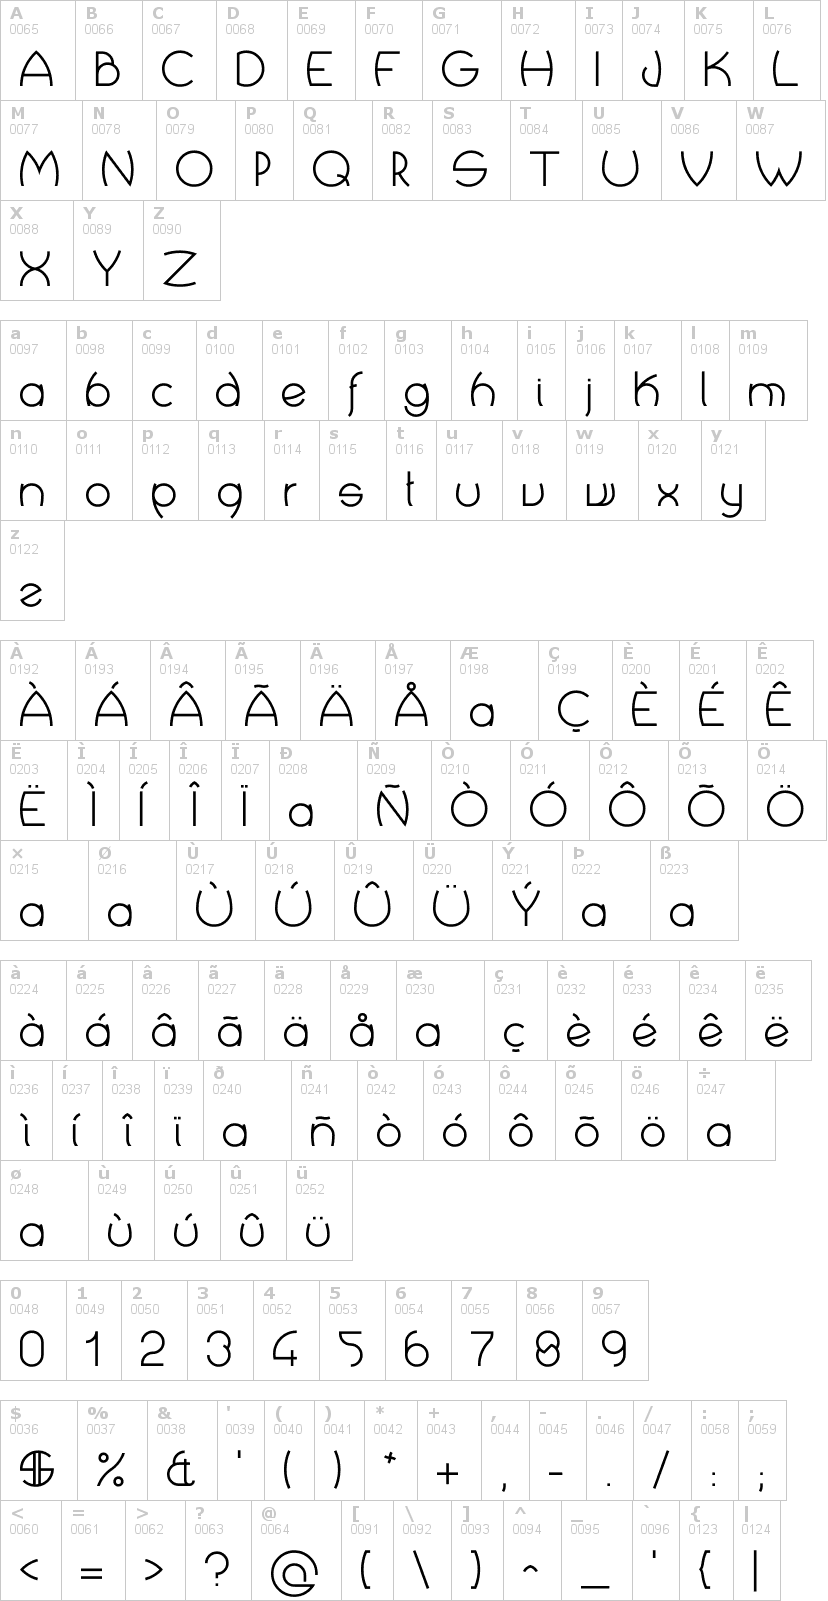 Lettere dell'alfabeto del font crop-types con le quali è possibile realizzare adesivi prespaziati